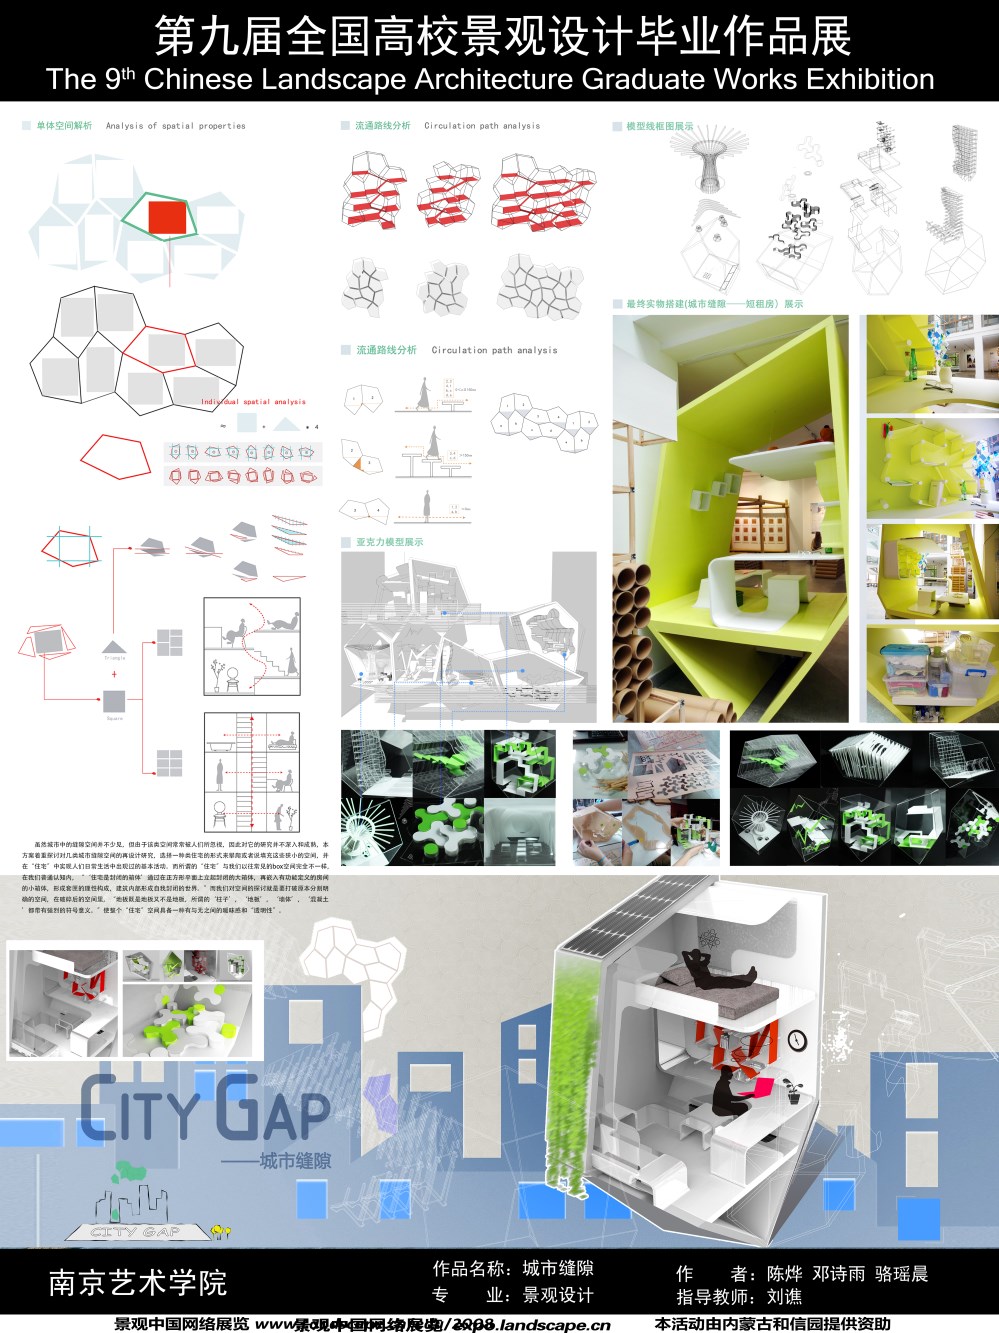 城市缝隙——高密度城市环境下碎片空间的再设计研究-2